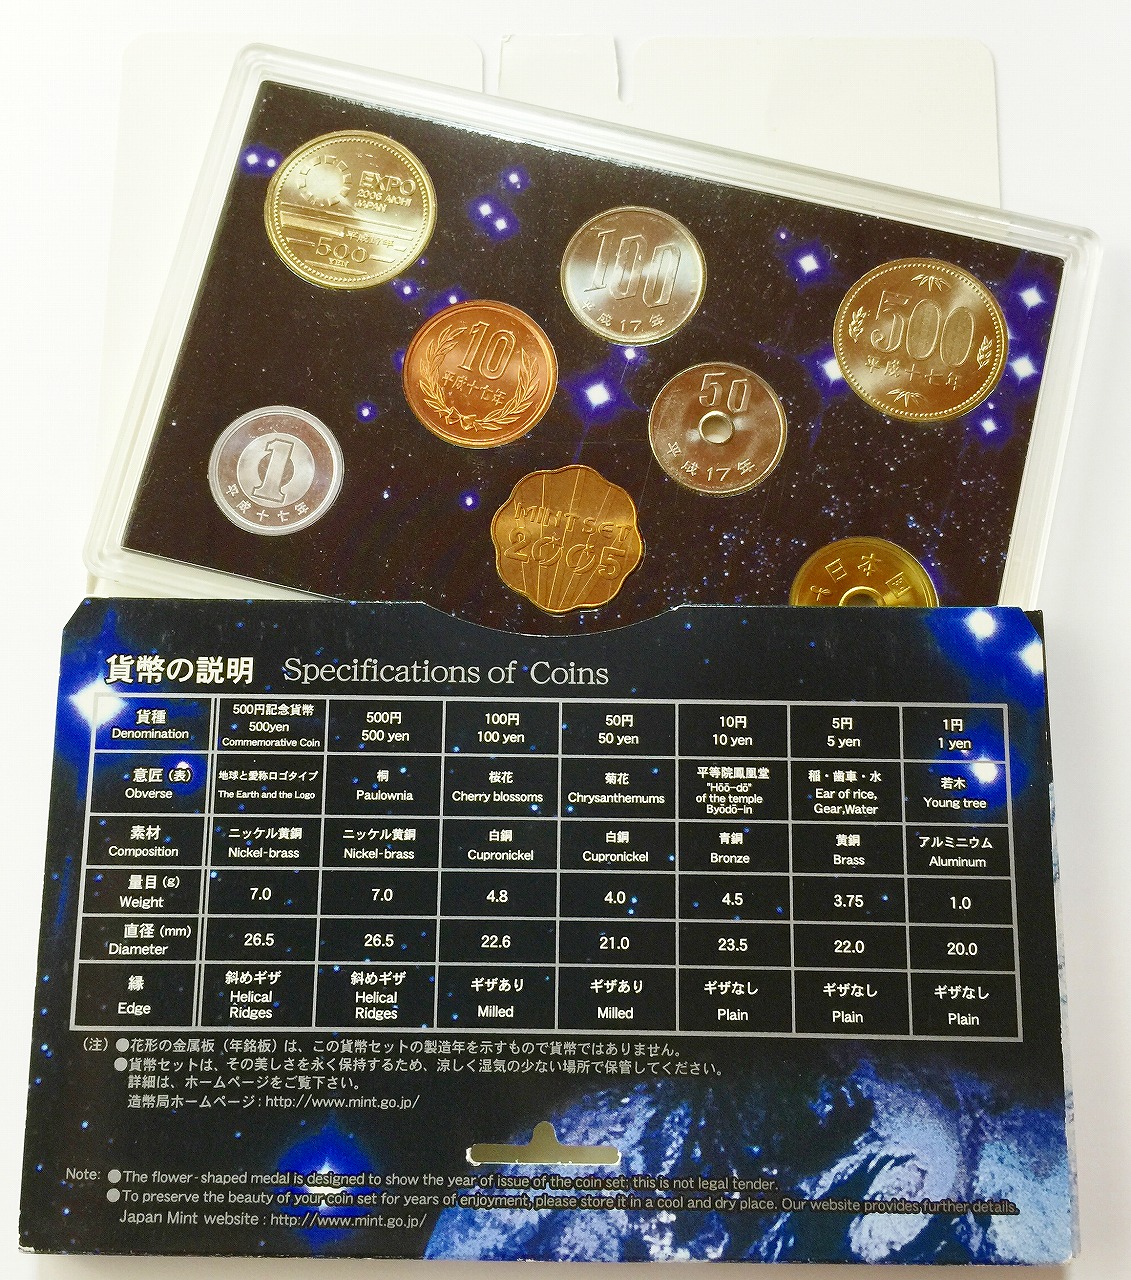 ホワイトブラウン 2005年日本国際博覧会記念 五百円ニッケル黄銅貨幣入りミントセット 通販